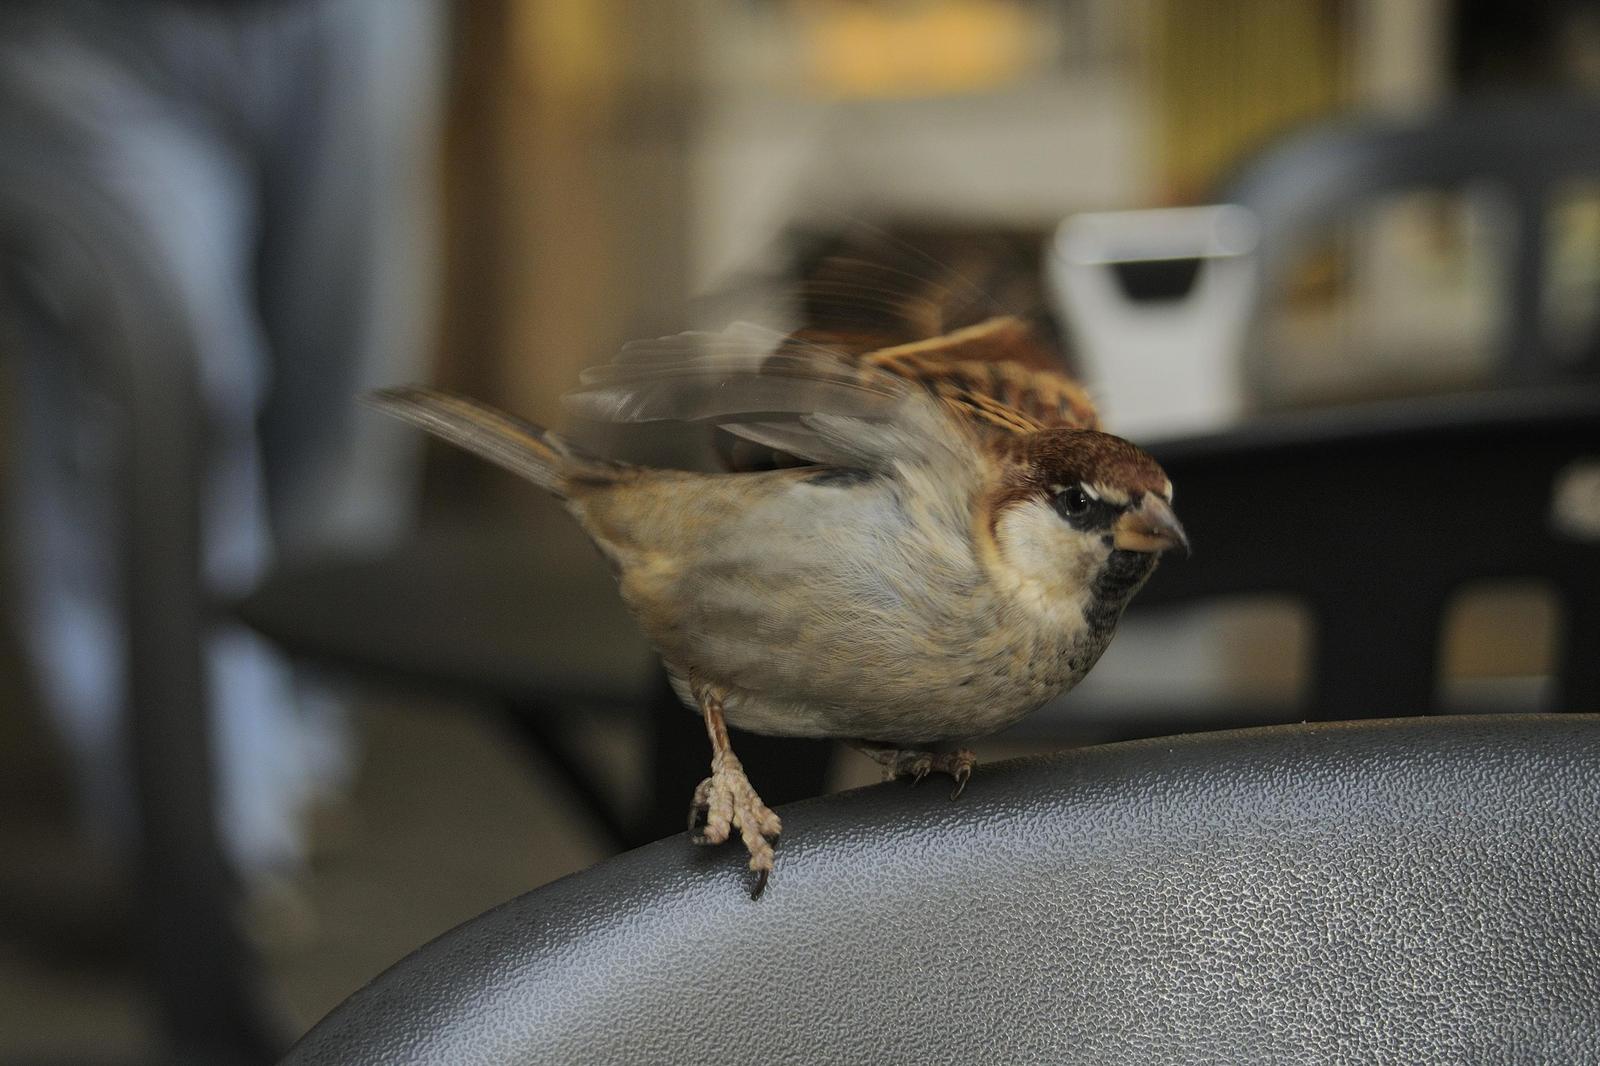 Italian Sparrow Photo by Andres Rios